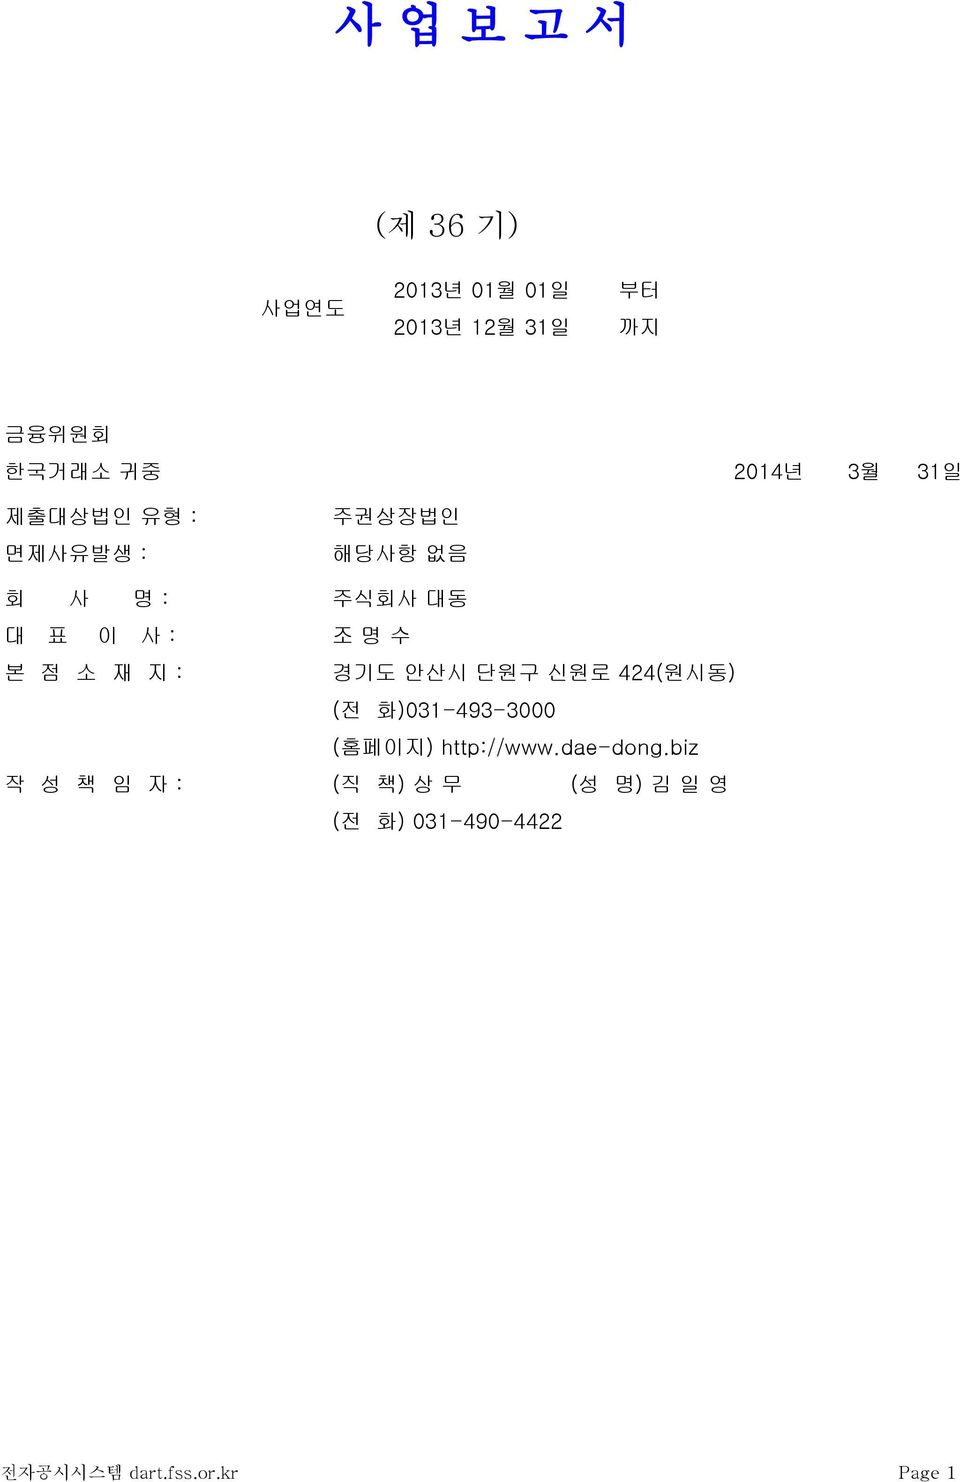 재 지 : 경기도 안산시 단원구 신원로 424(원시동) (전 화)031-493-3000 (홈페이지) http://www.dae-dong.